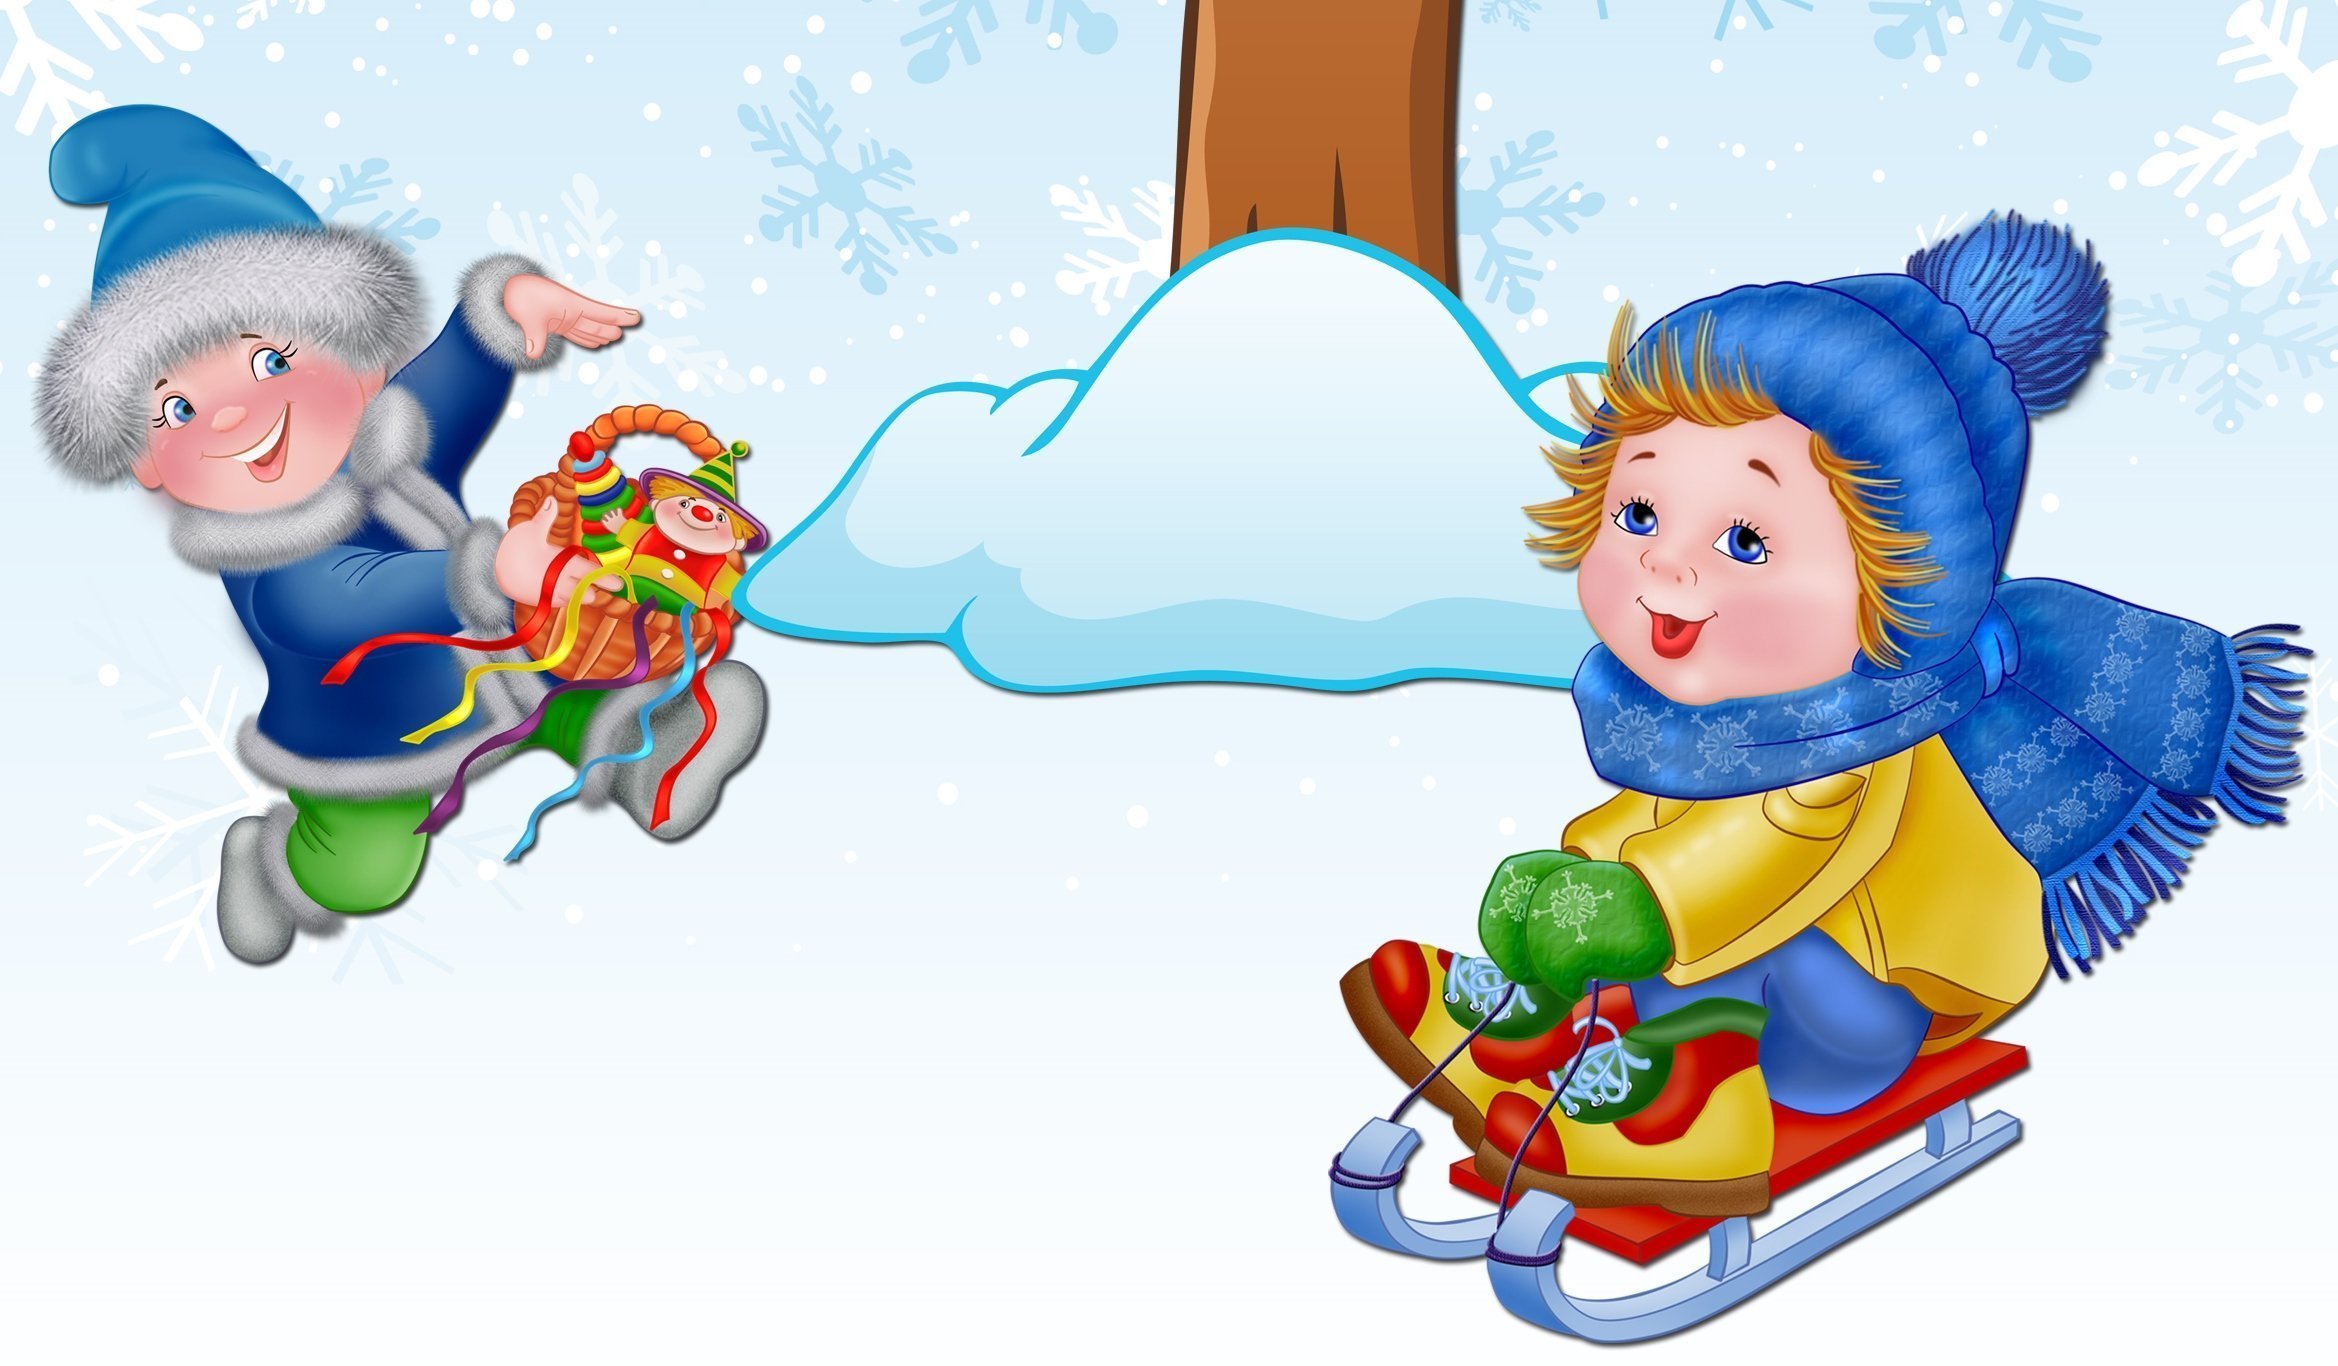 Картинка зимы для детей в детском саду. Зимние забавы для детей. Зима для детей в детском саду. Зимние забавы в детском саду. Зимние фоны для детского сада.